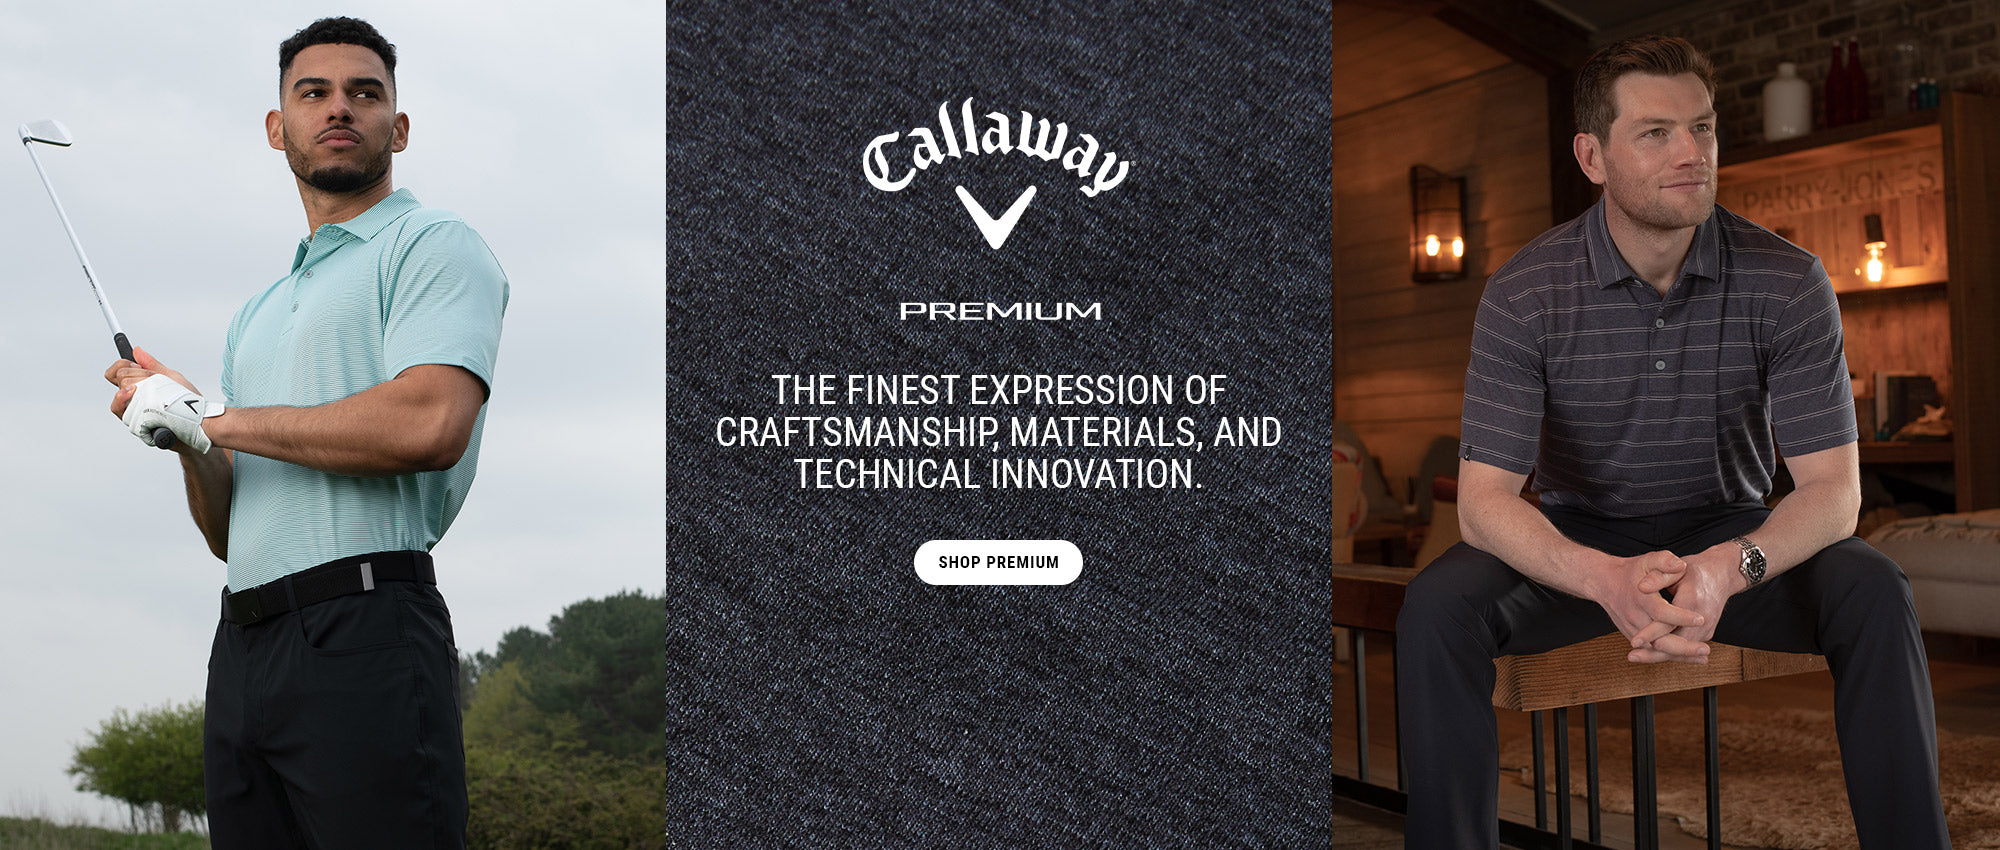 Callaway Premium